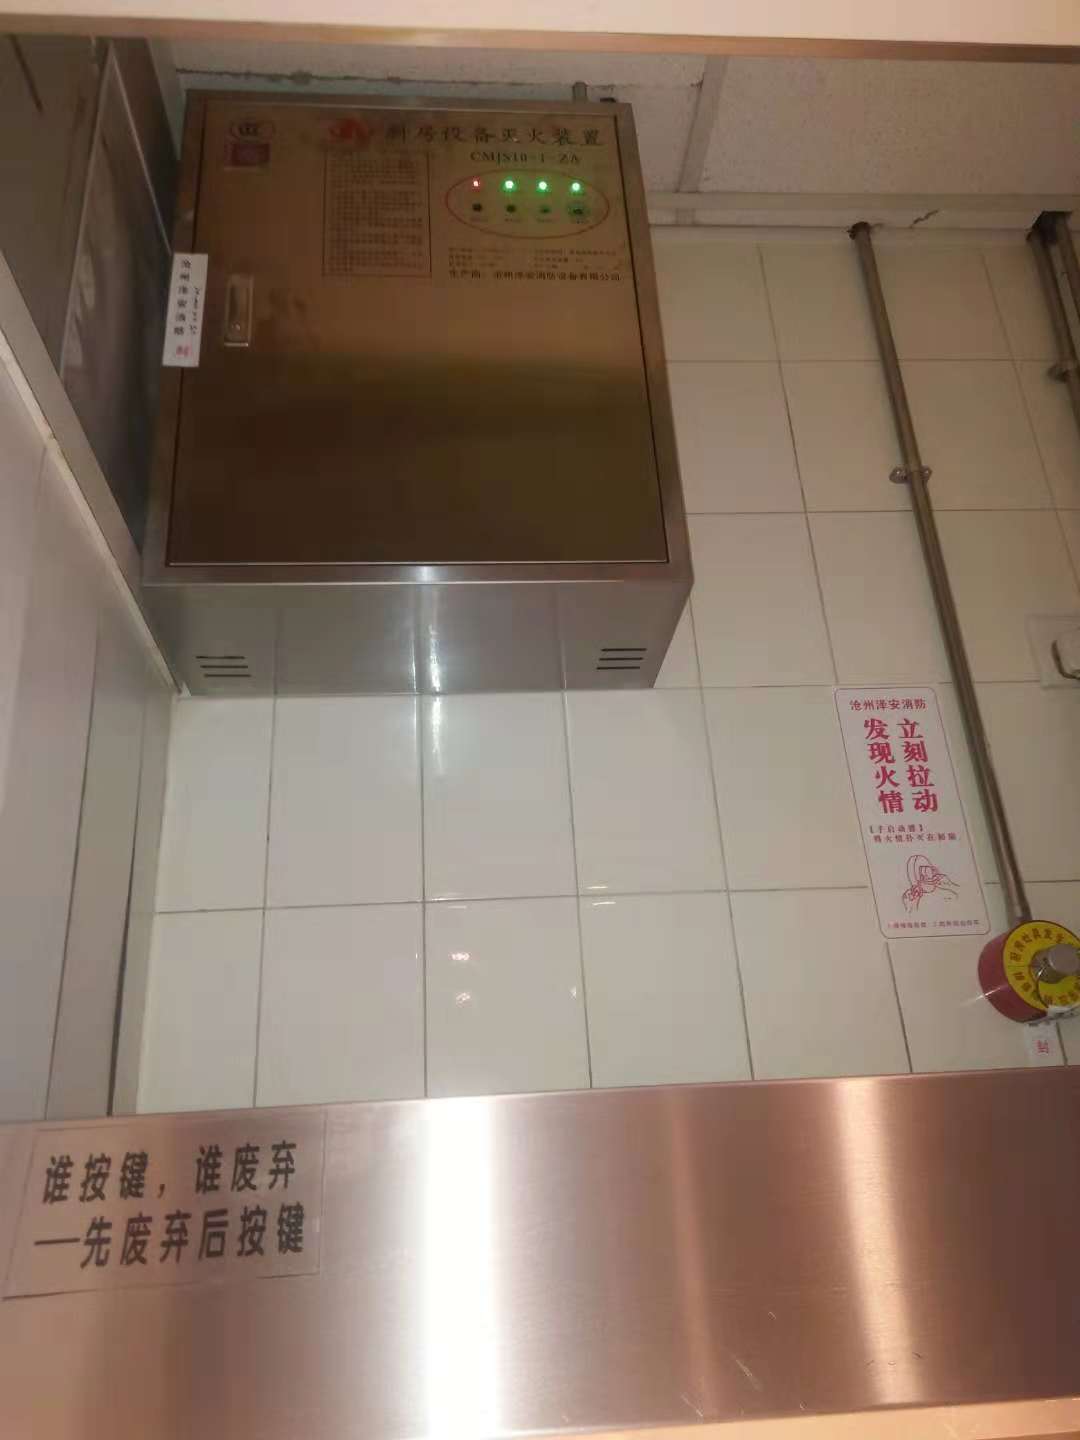 北京西站灶台自动灭火系统改造 操作维护简便